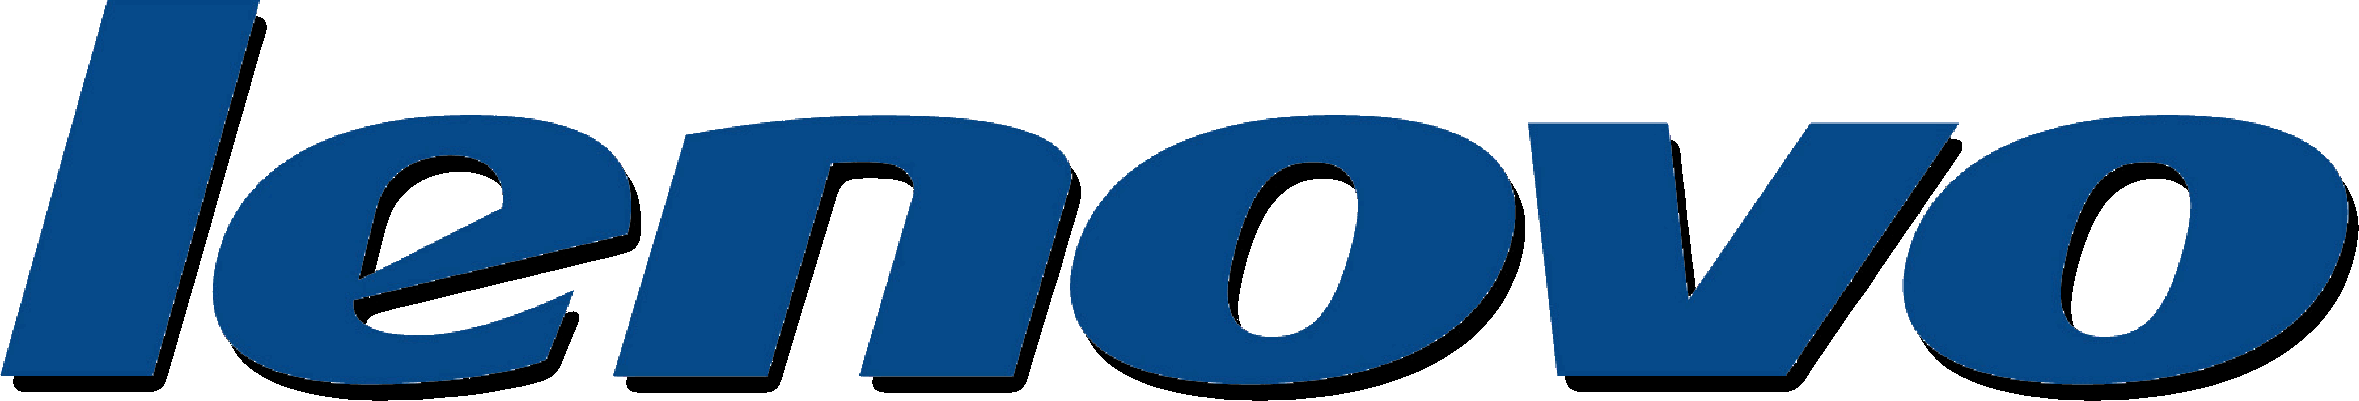 lenovo-logo.gif